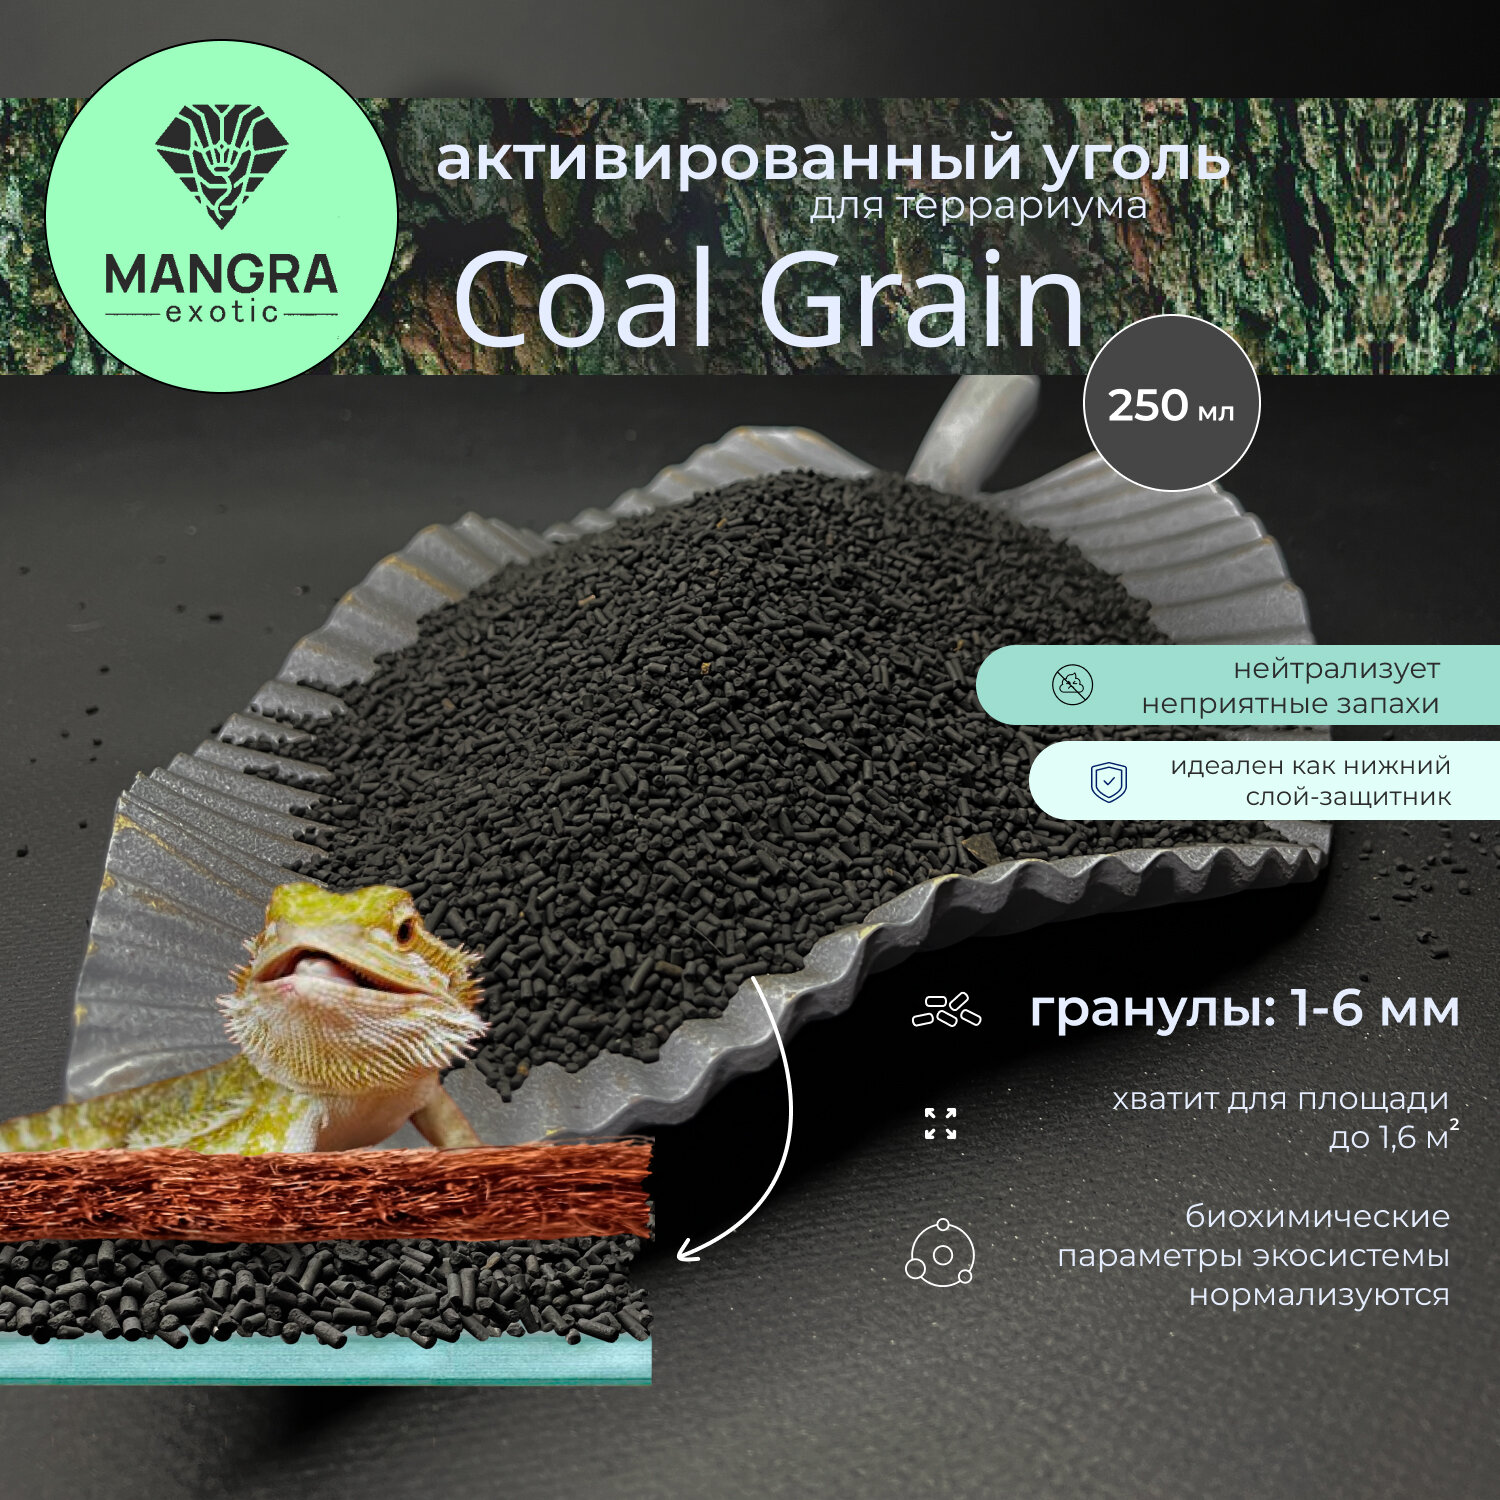 Активированный уголь для террариума MANGRA exotic Coal Grain 250 мл гранулированный - натуральный древесный уголь гранулы: 1-6 мм - основа под кокосовый коврик и грунт